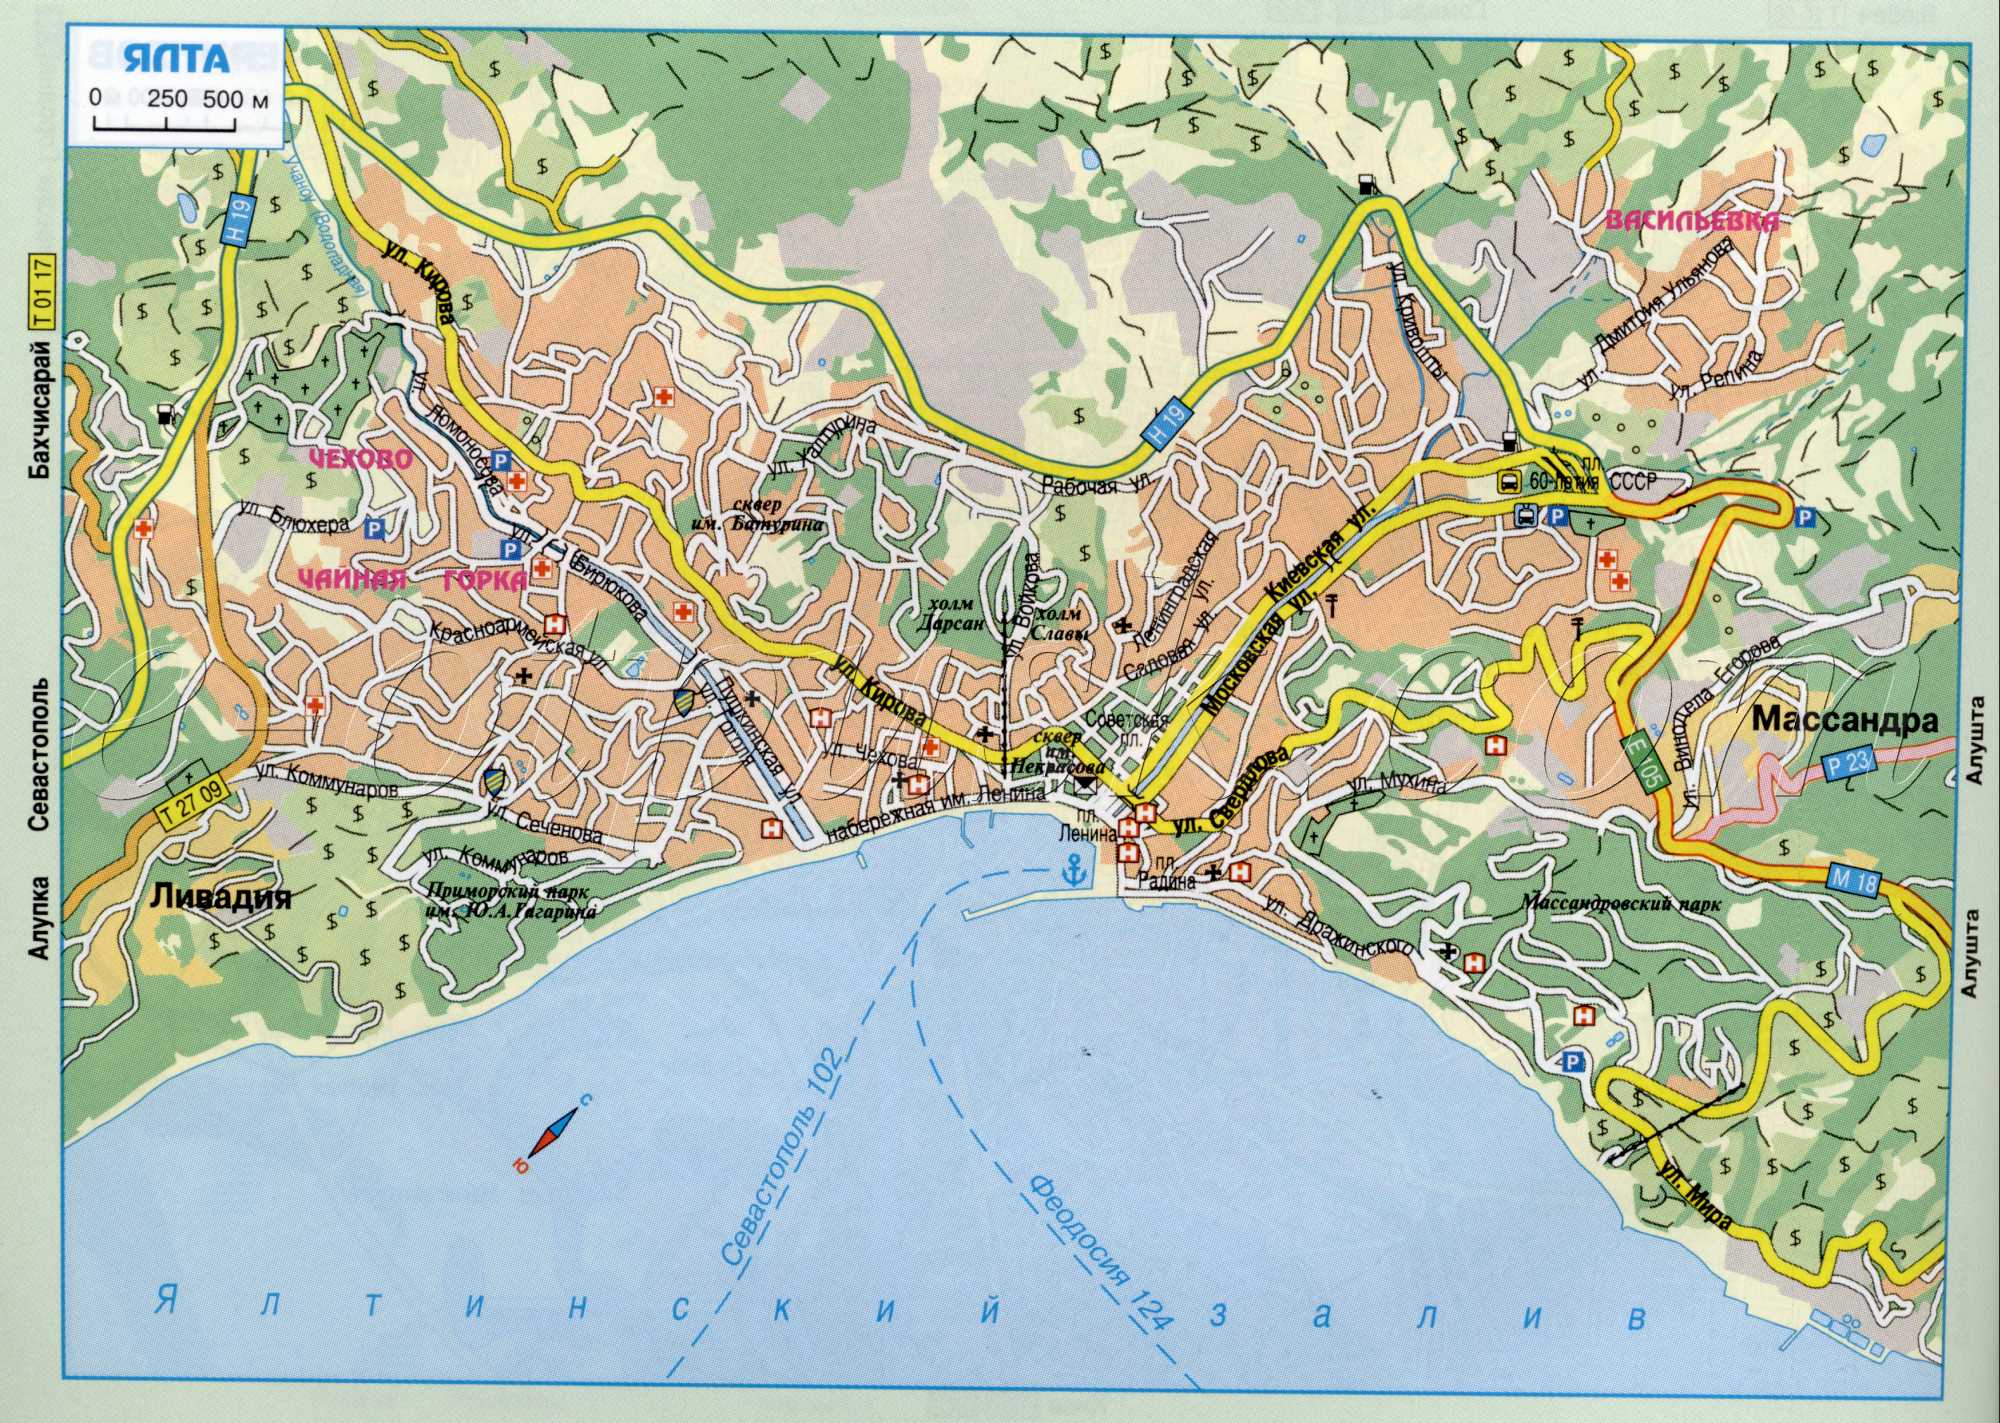 Карта Ялты. автомобильная карта г.Ялта, Крым. скачать бесплатно